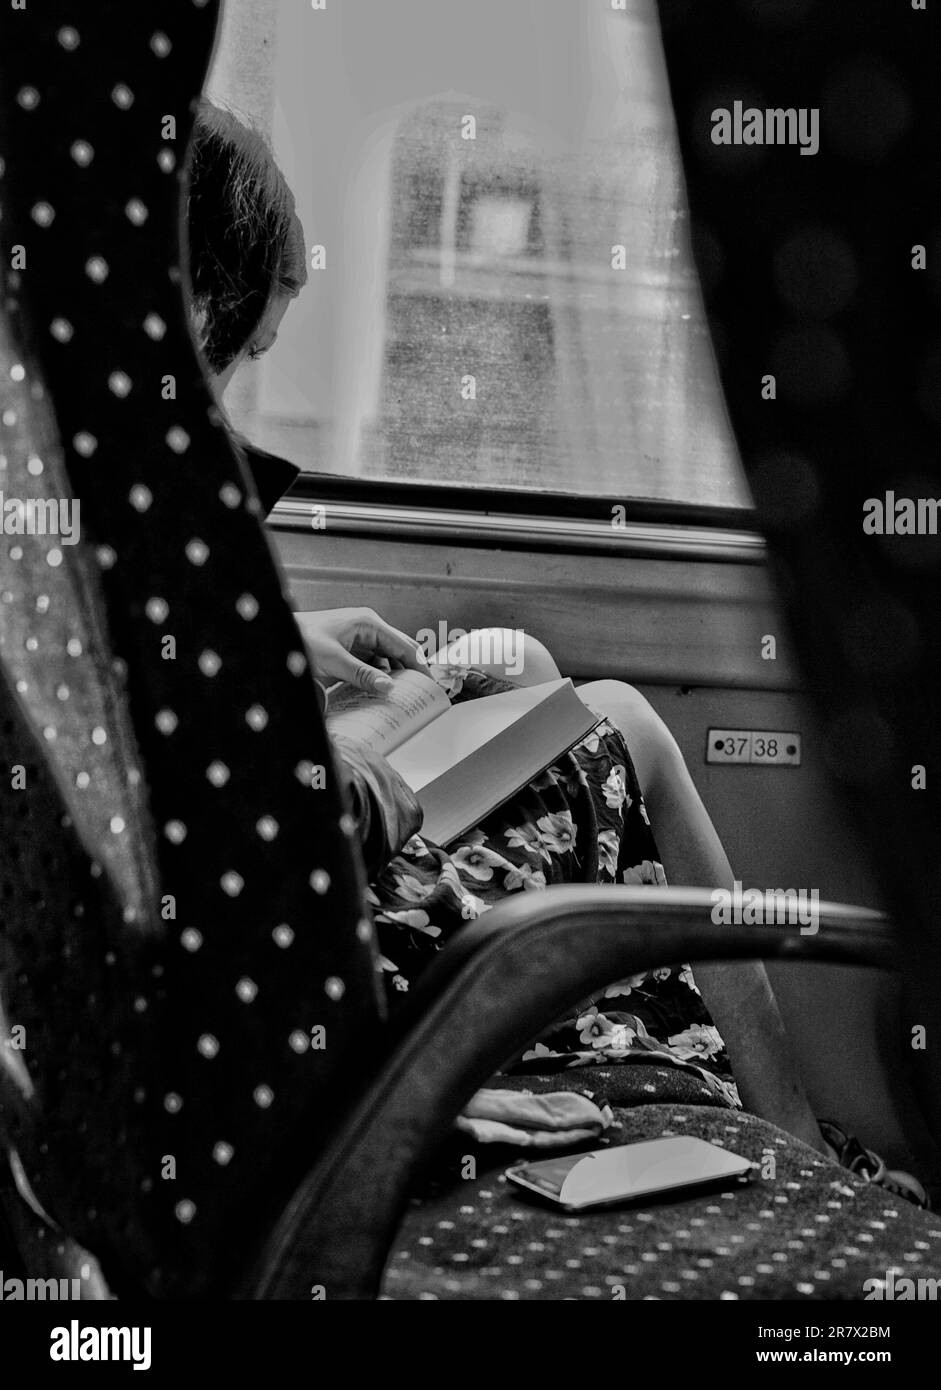 Une jeune femme est vue regardant attentivement un livre alors qu'elle était assise dans un bus sur une image noire et blanche Banque D'Images